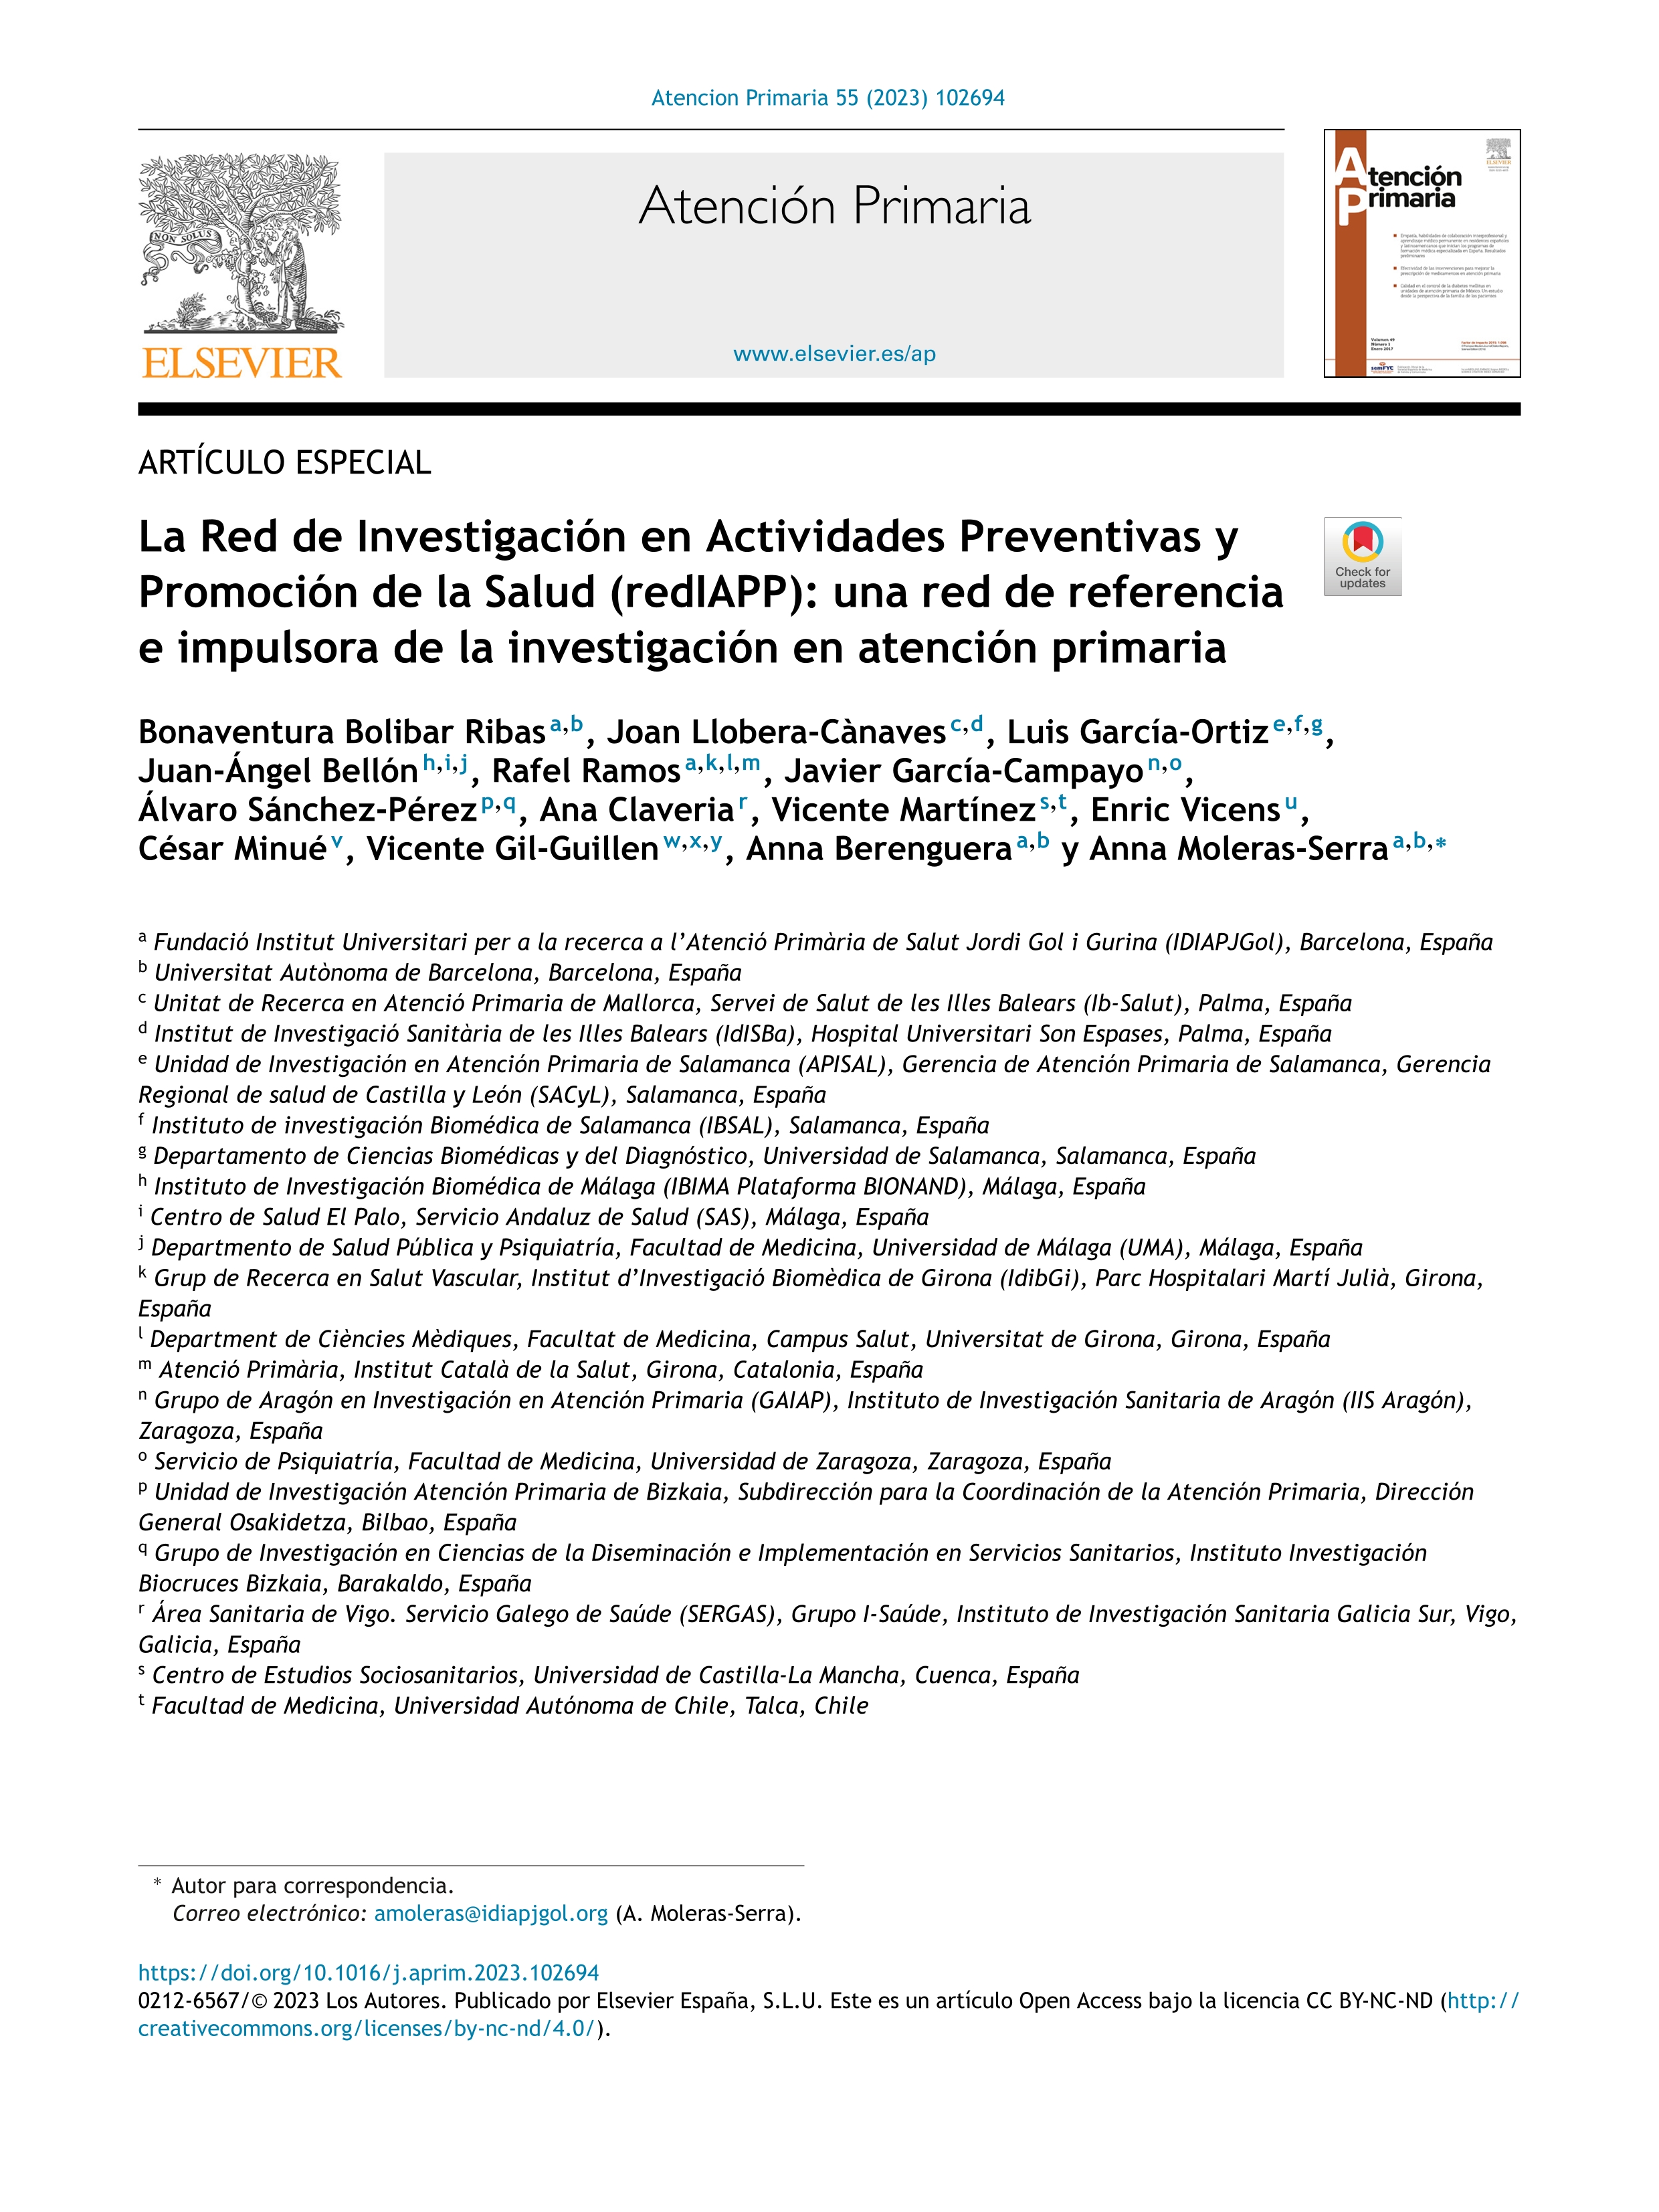 La Red de Investigación en Actividades Preventivas y Promoción de la Salud (redIAPP): una red de referencia e impulsora de la investigación en atención primaria